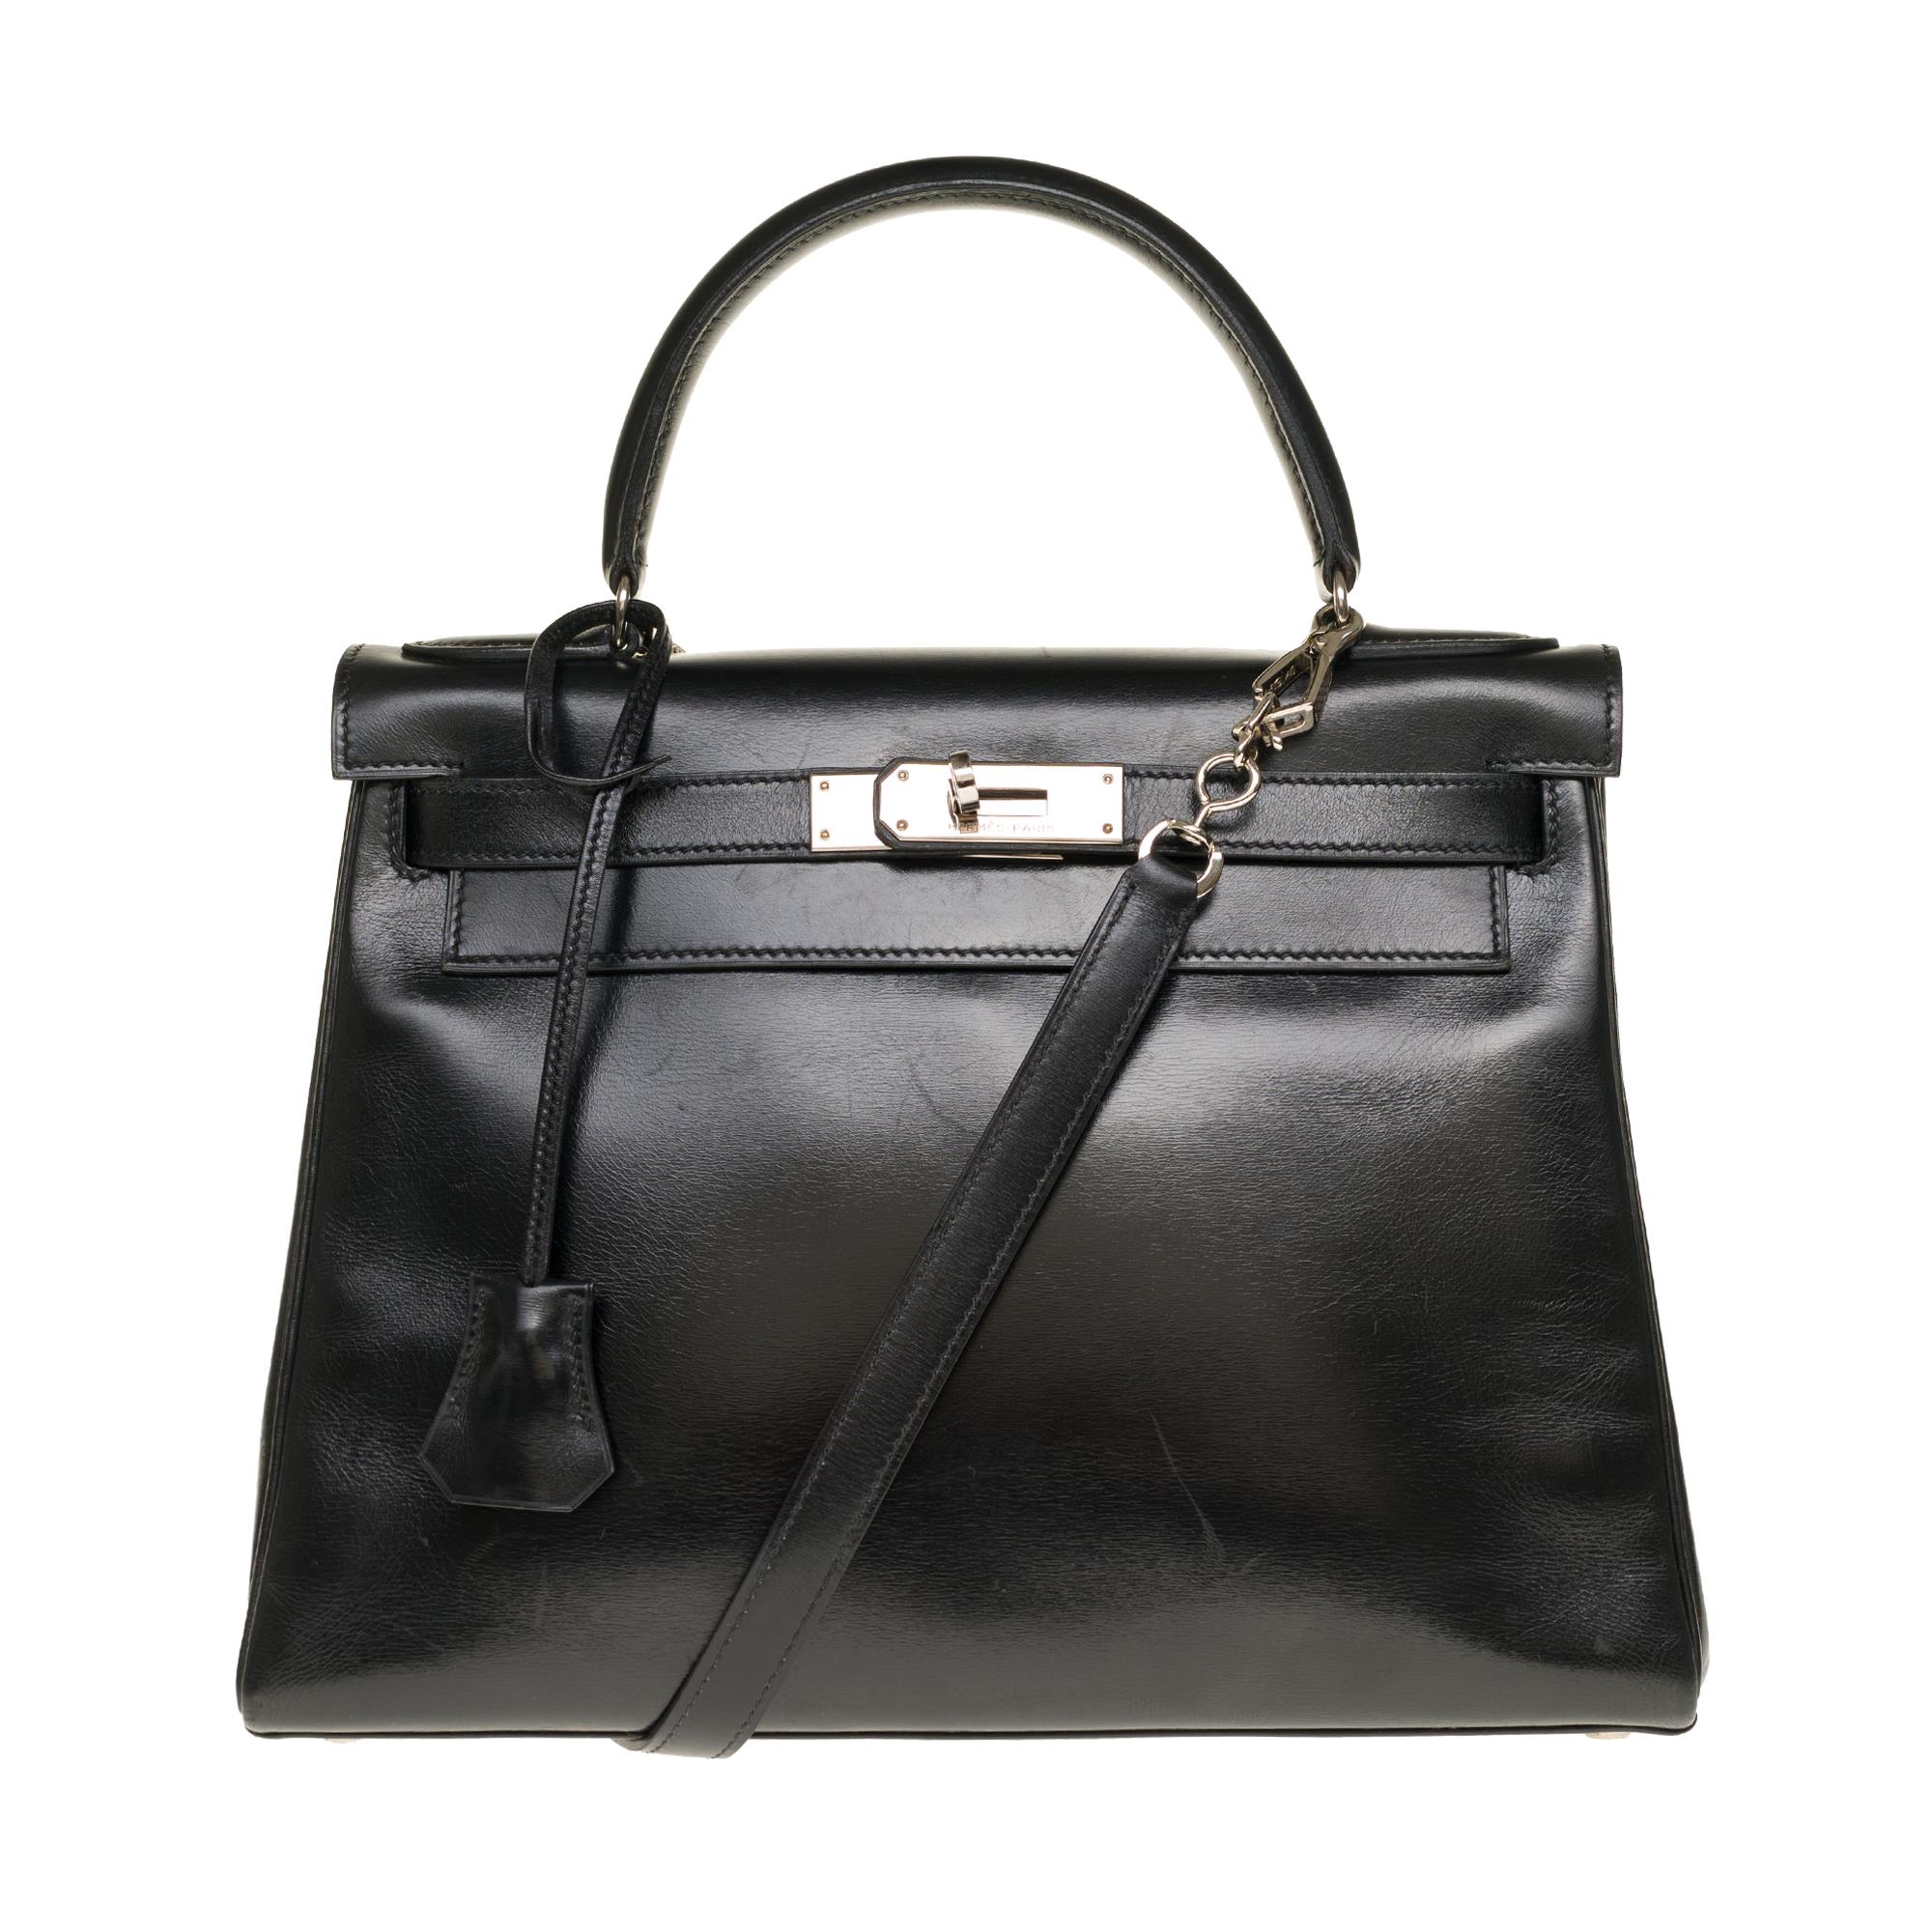 Black Hermès Kelly 28cm shoulder bag with strap in black calfskin and silver hardware